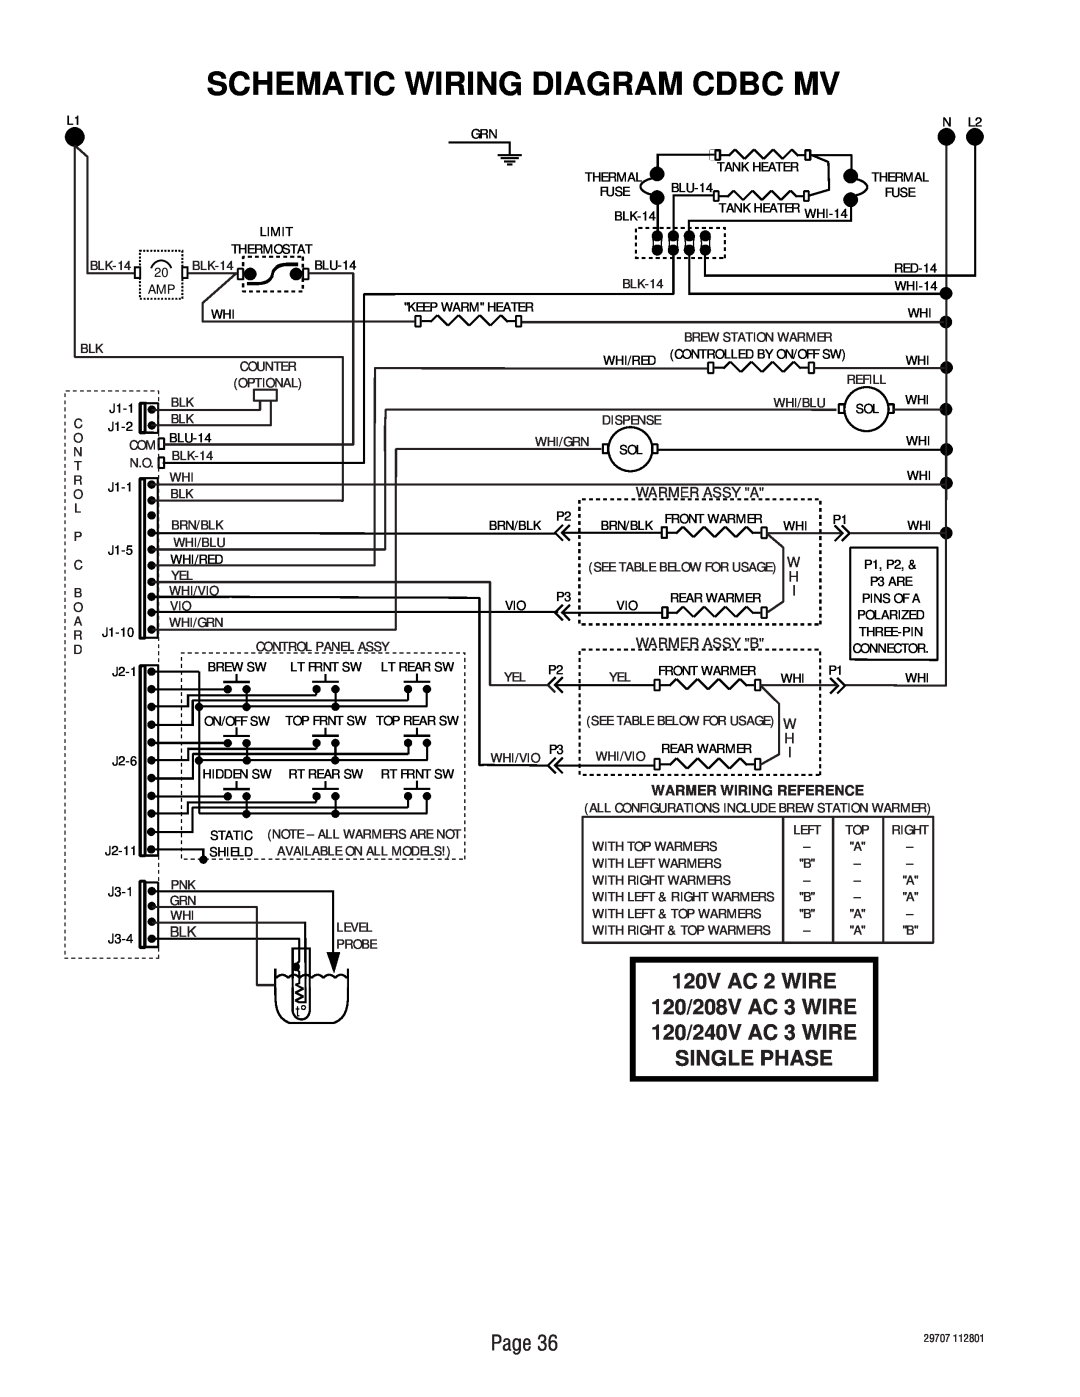 Bunn CDBC APS-DV, CDBCF-DV, CDBC-MV, CDBC-DV Schematic Wiring Diagram Cdbc Mv, 120V AC 2 WIRE, N L2, Warmer Wiring Reference 